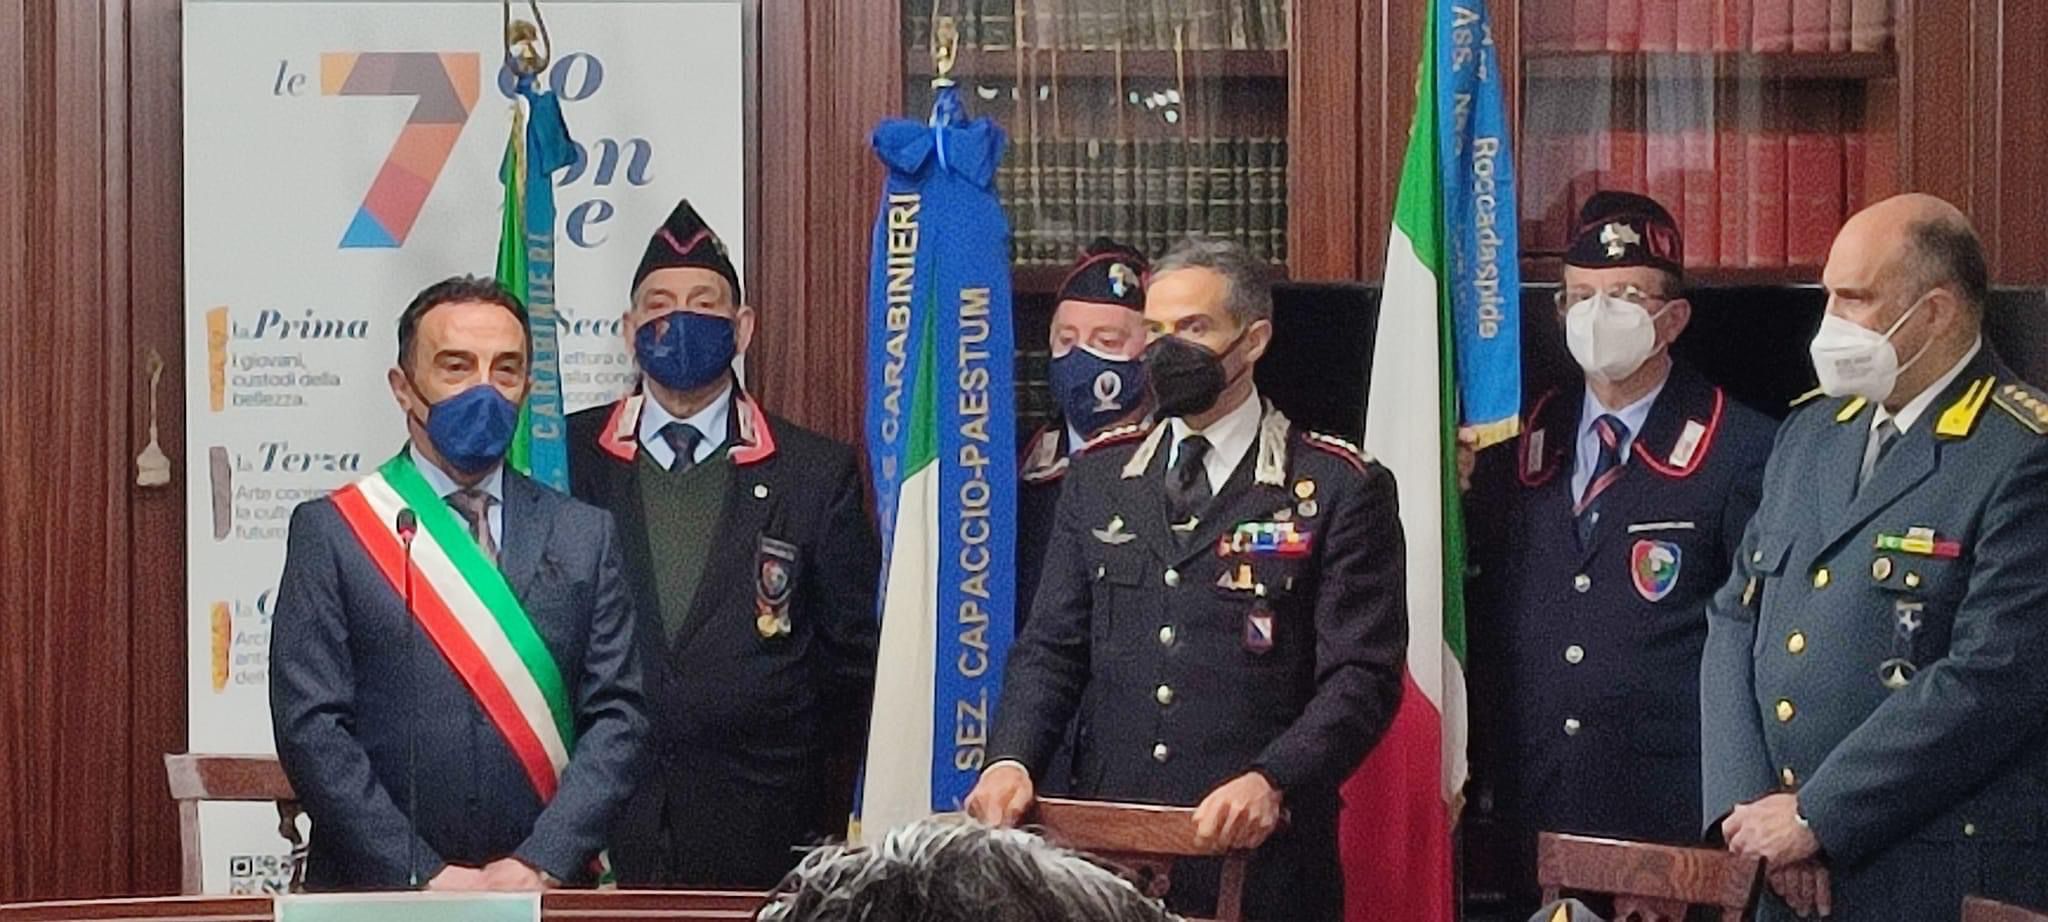 Cittadinanza onoraria di Giungano all’Arma dei Carabinieri